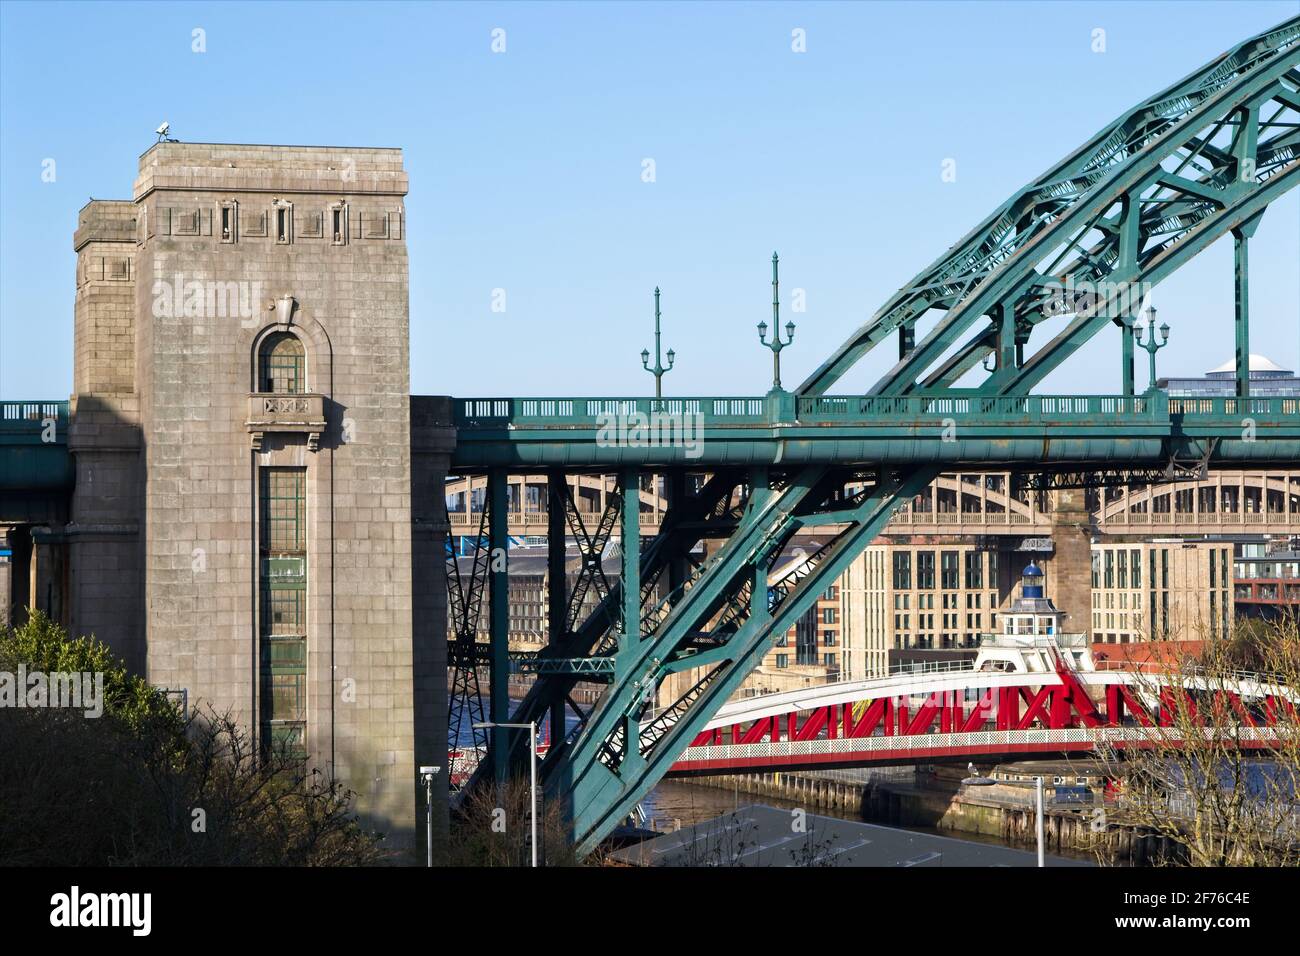 Die legendäre Tyne Bridge wurde 1928 eröffnet, um Newcastle und Gateshead zu verbinden, indem sie den Fluss Tyne in Tyne und Wear, Nordostengland, überspannt. Stockfoto